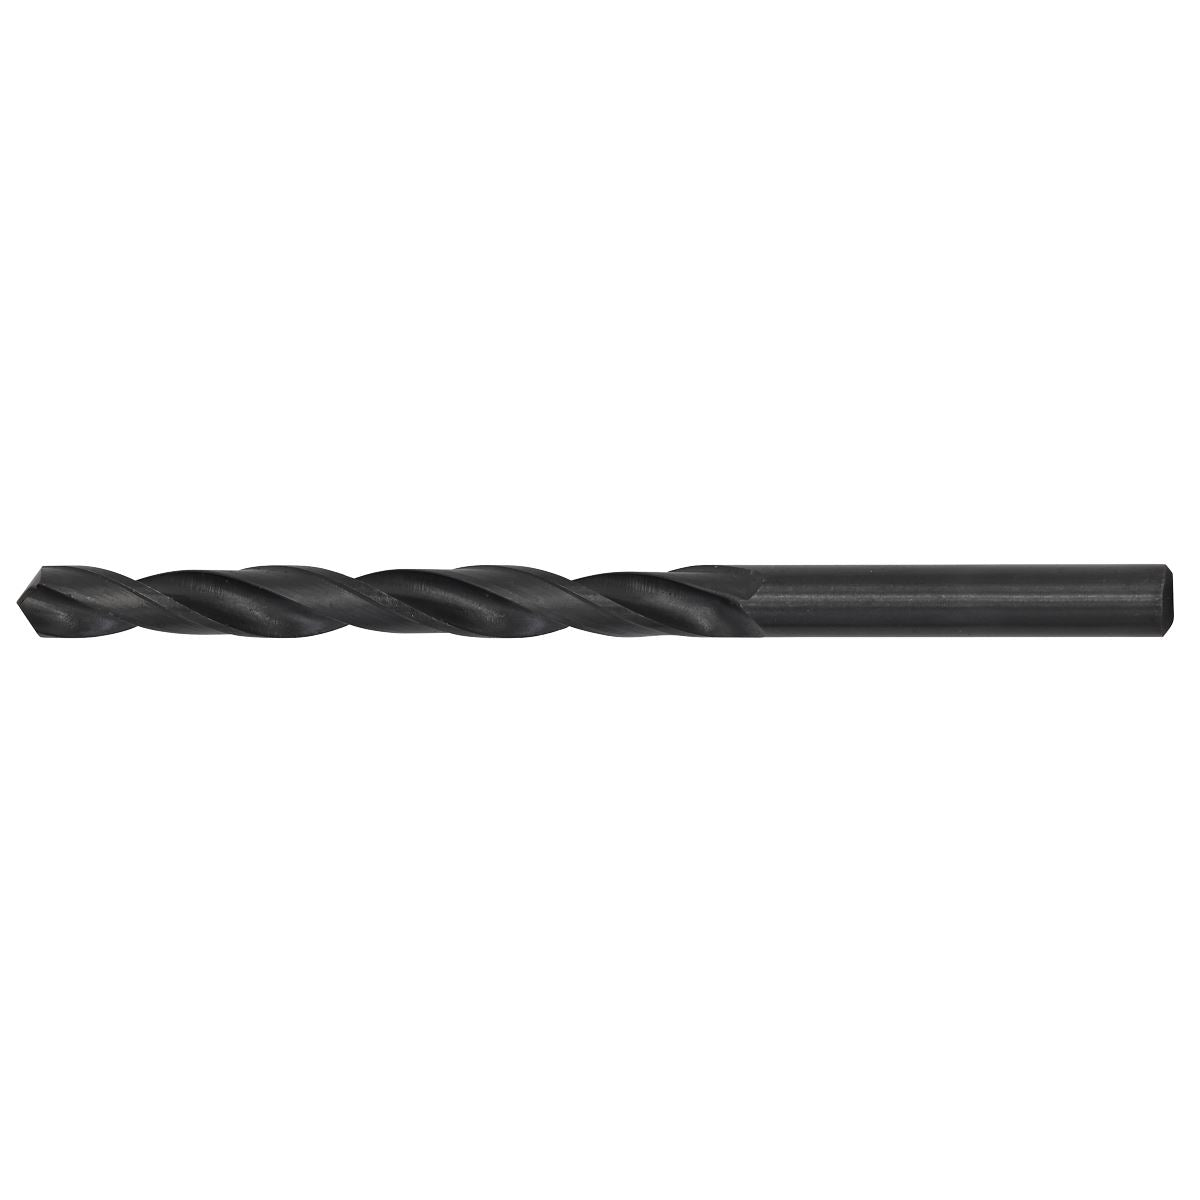 Sealey HSS Twist Drill Bit Ø9.5 x 125mm